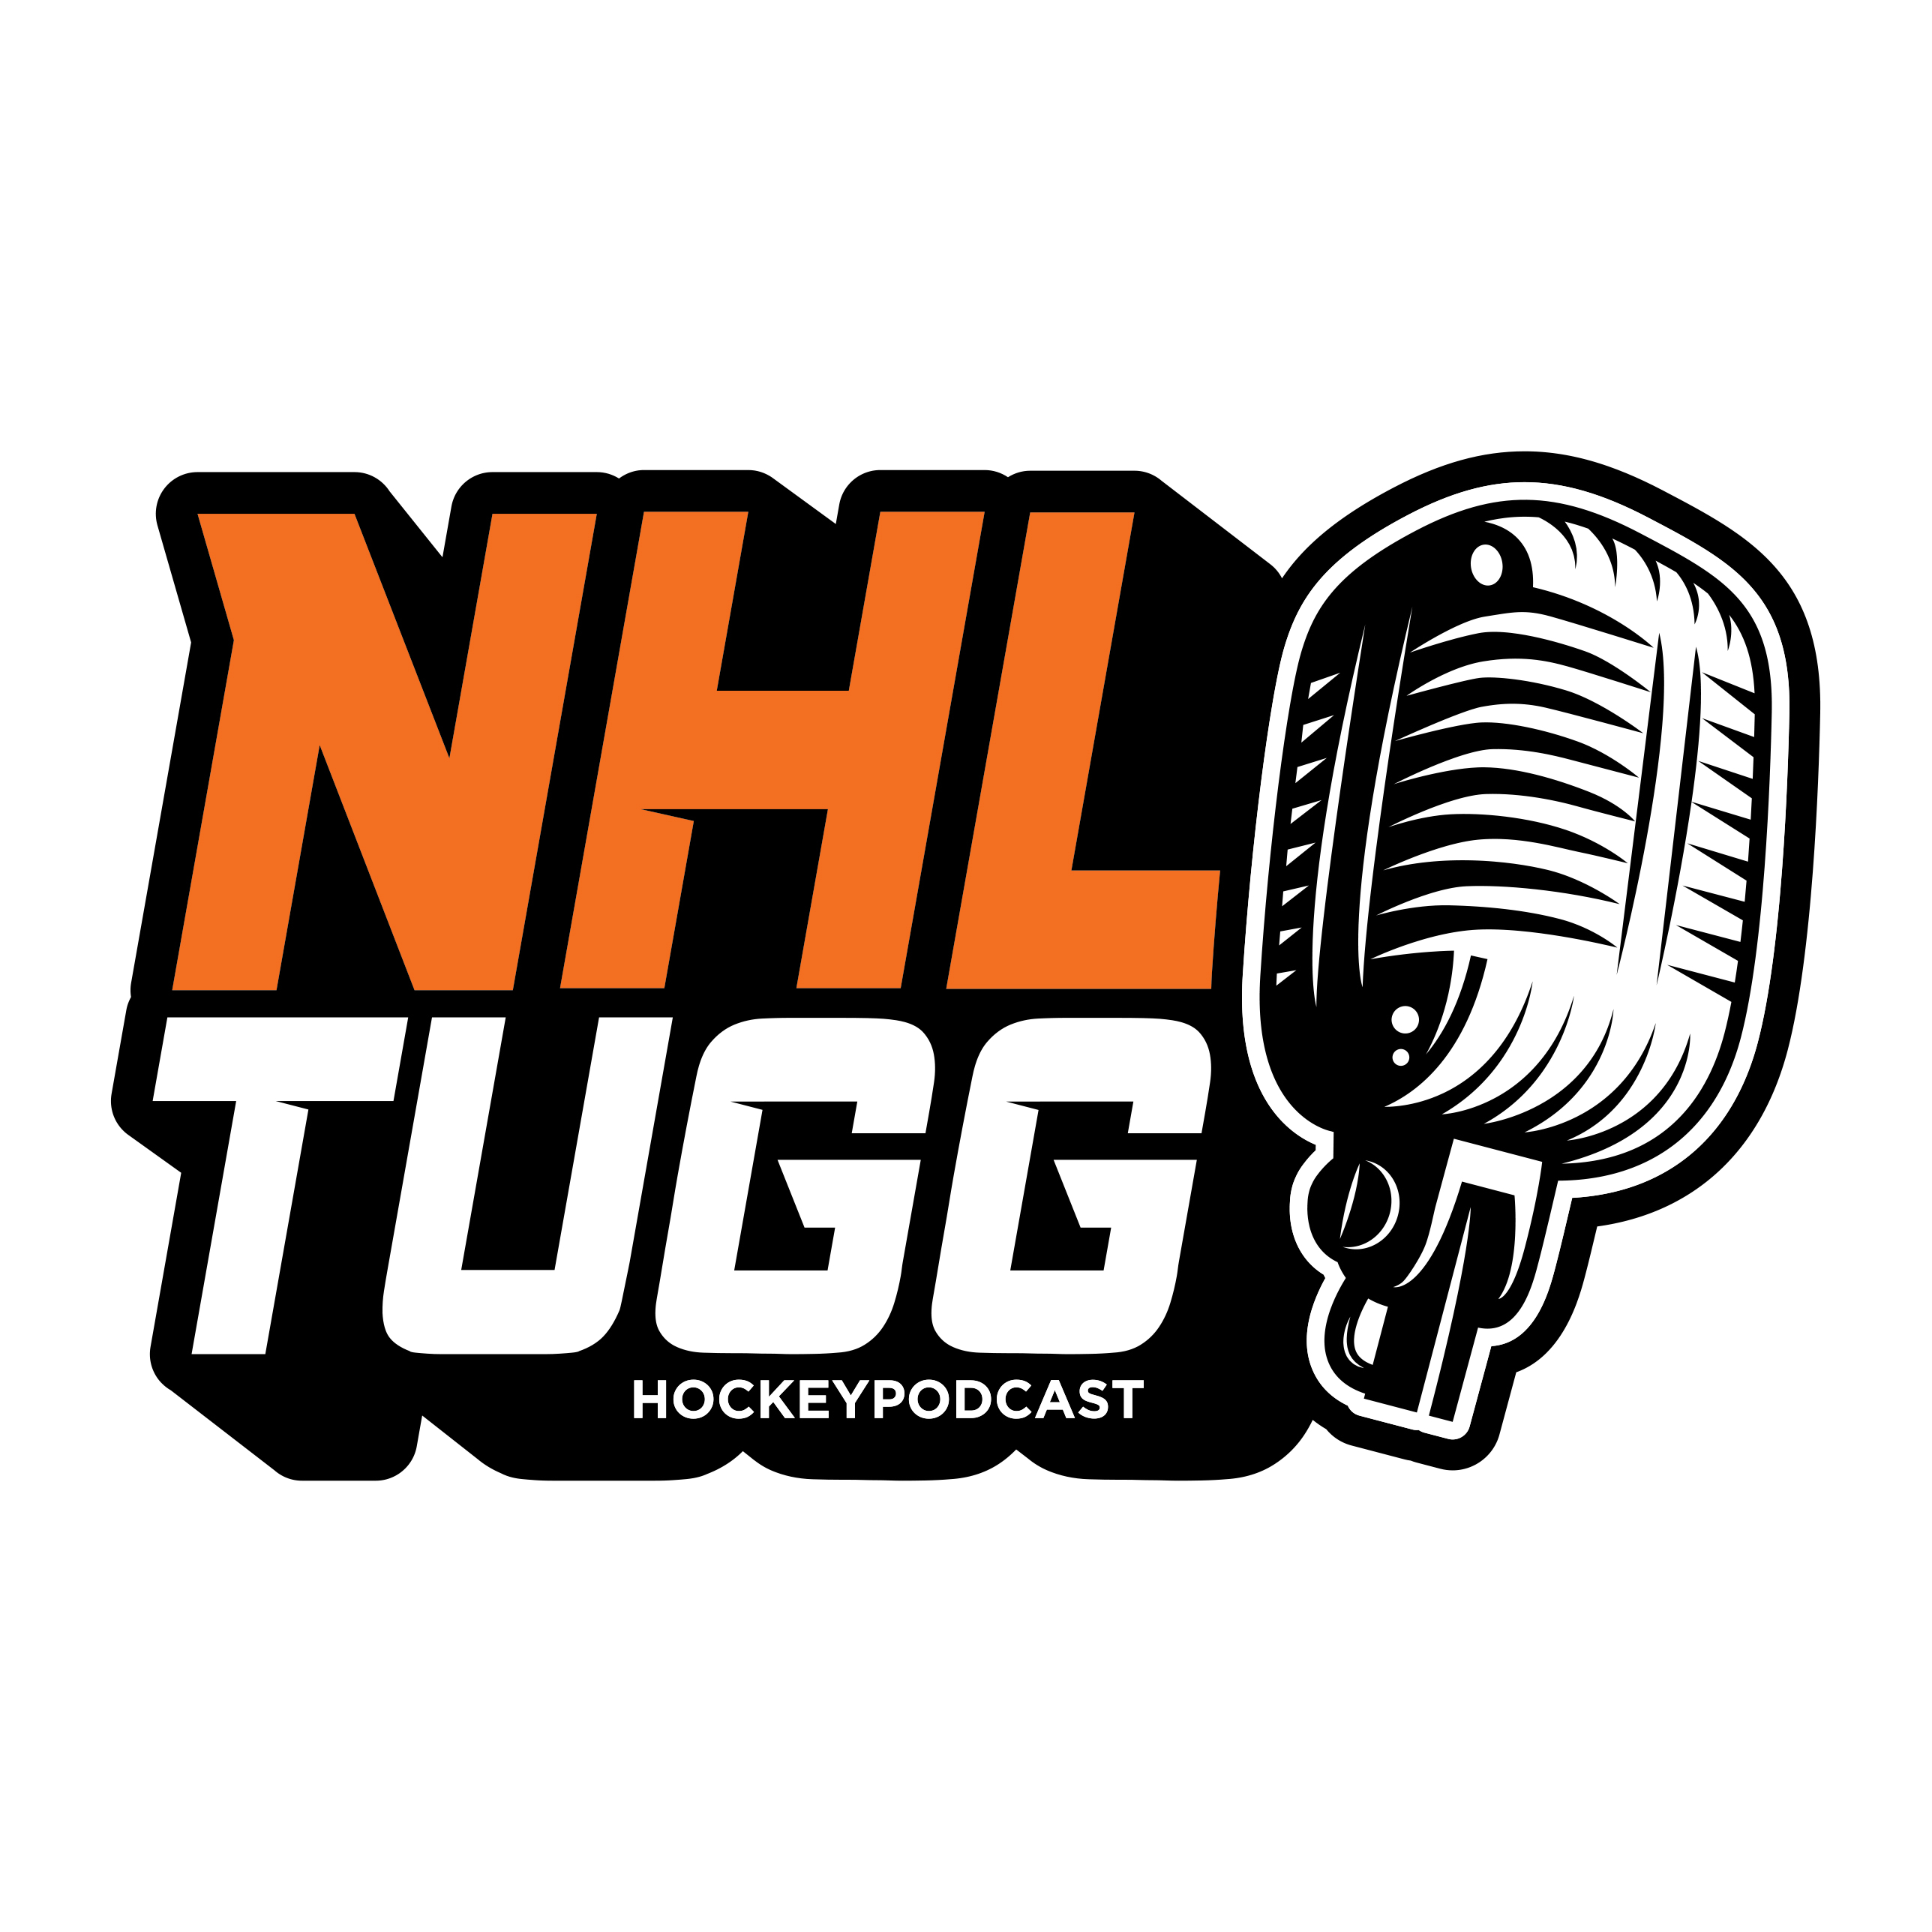 NHL-Tugg avsnitt 67 “Världens bästa hockeynamn”